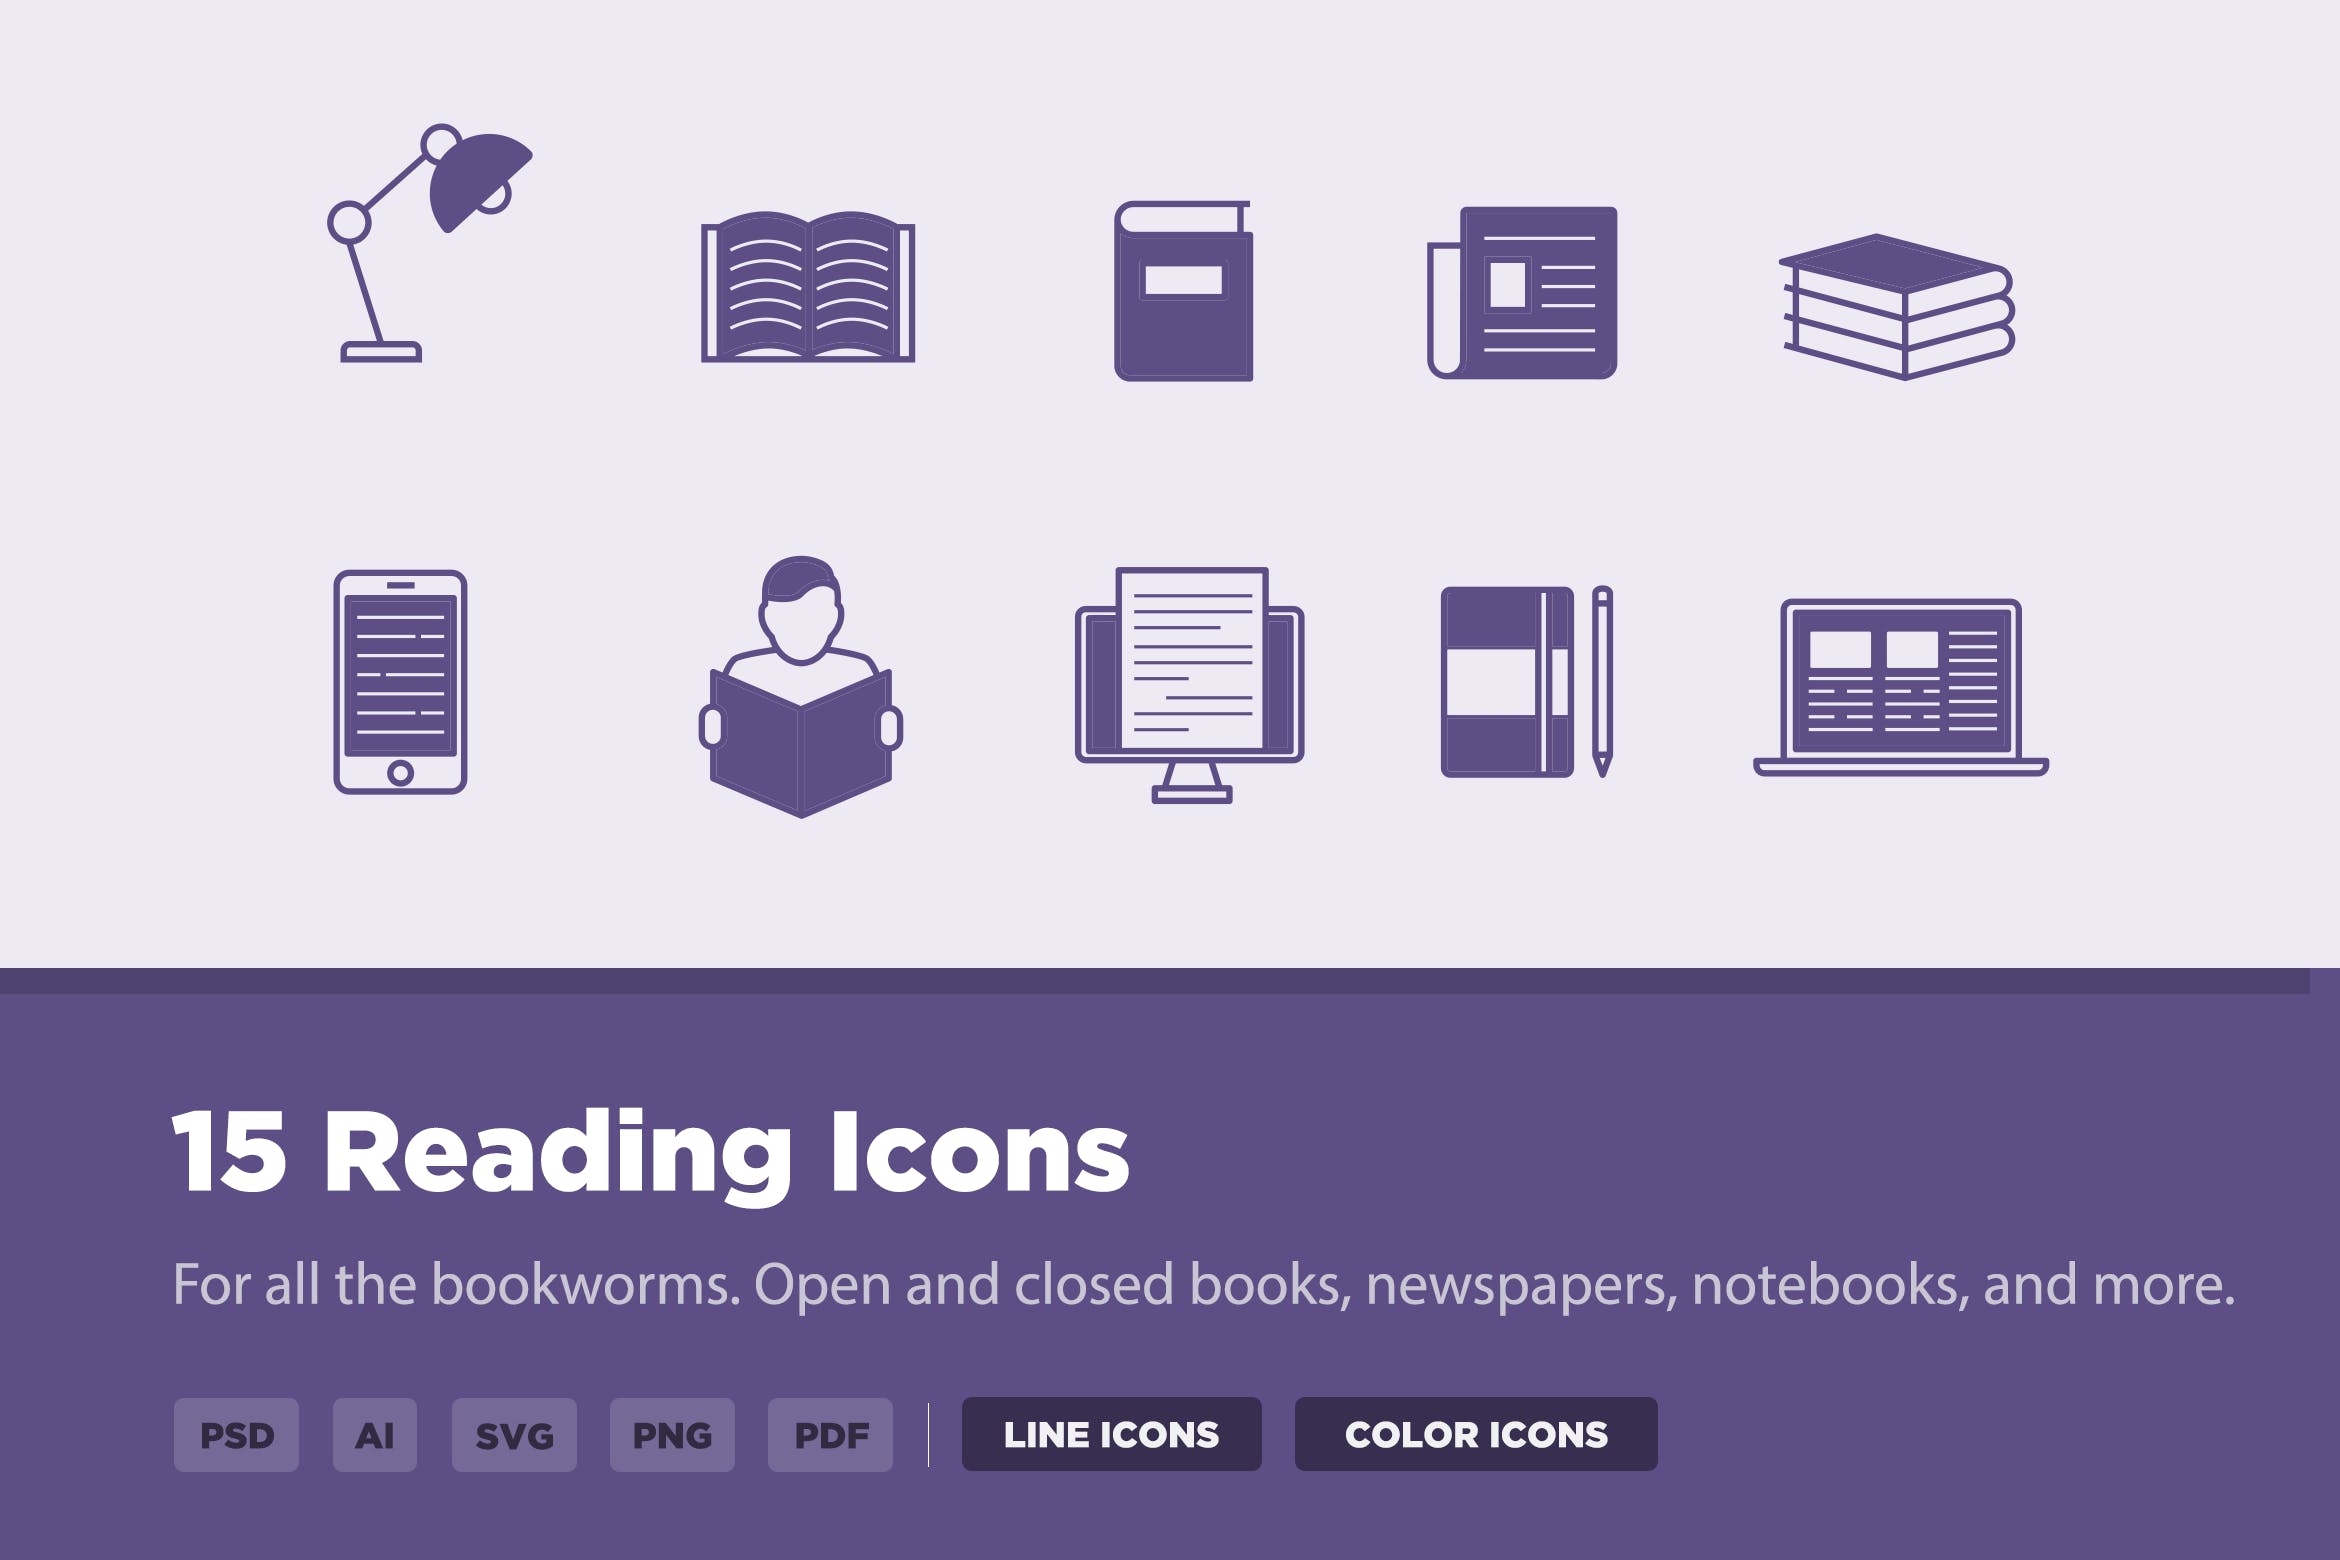 图书阅读主题矢量图标素材 15 Reading Icons